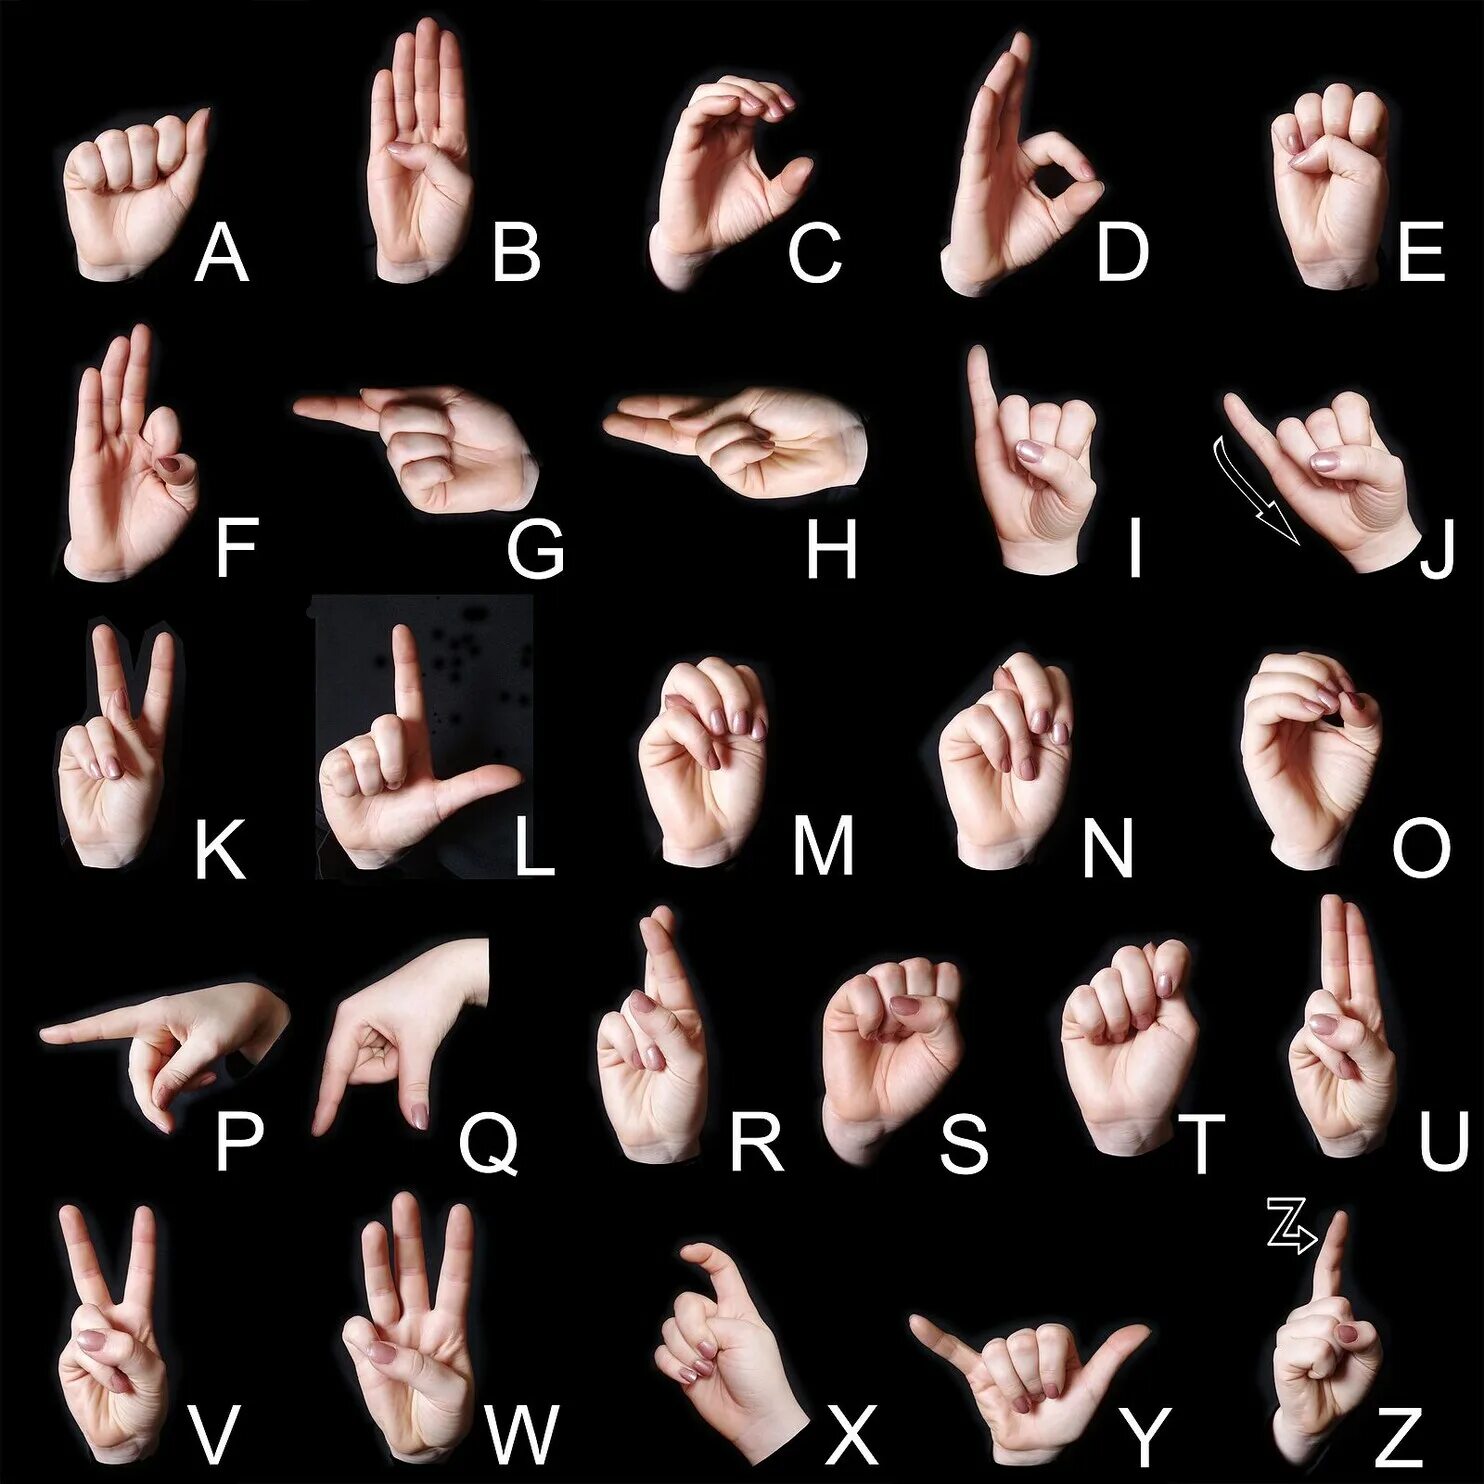 Дактильная Азбука глухих жесты. Алфавит английский жестовый язык. Английский язык жестов глухонемых. Английский алфавит для глухих. Глухой на английском